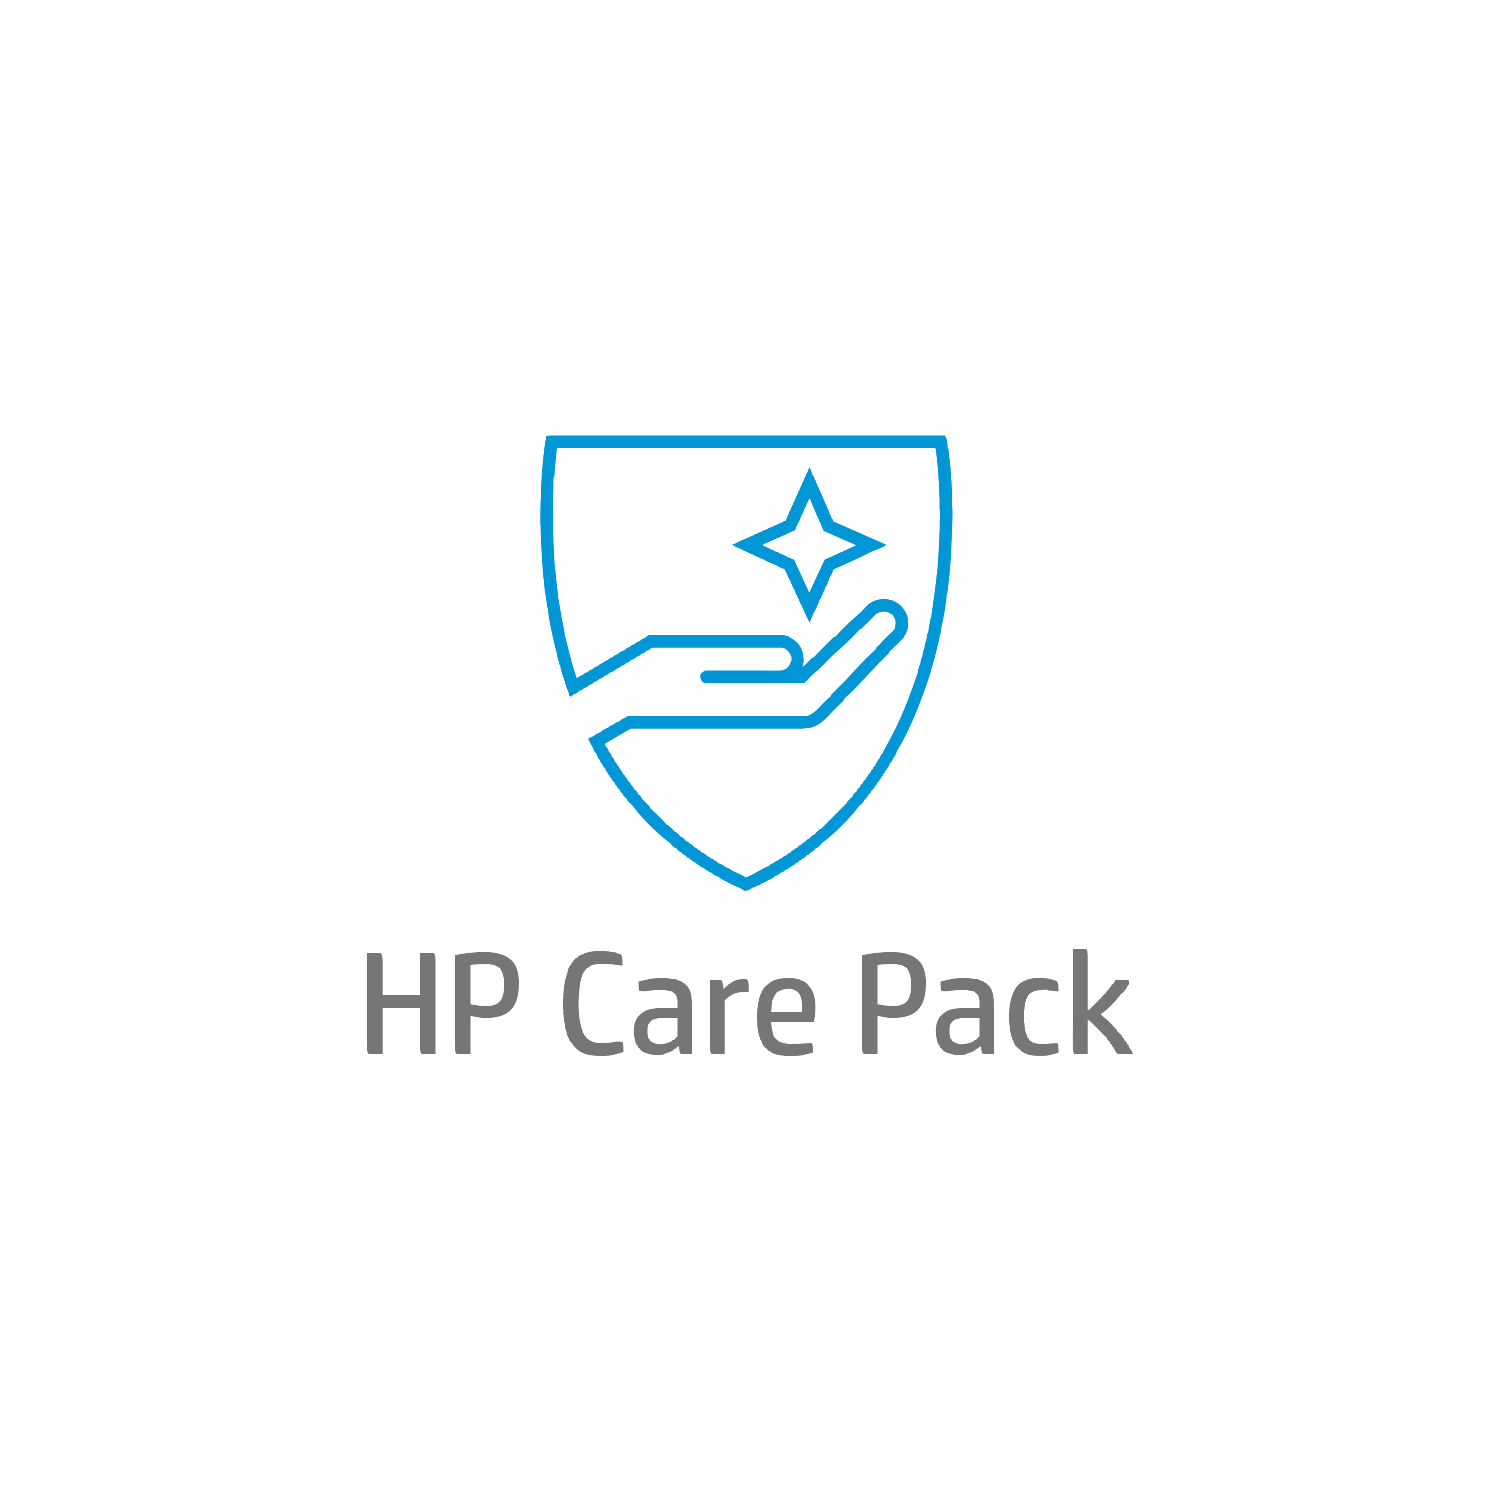 Bild von HP Care Pack Next Business Day Hardware Support with Defective Media Retention - Serviceerweiterung